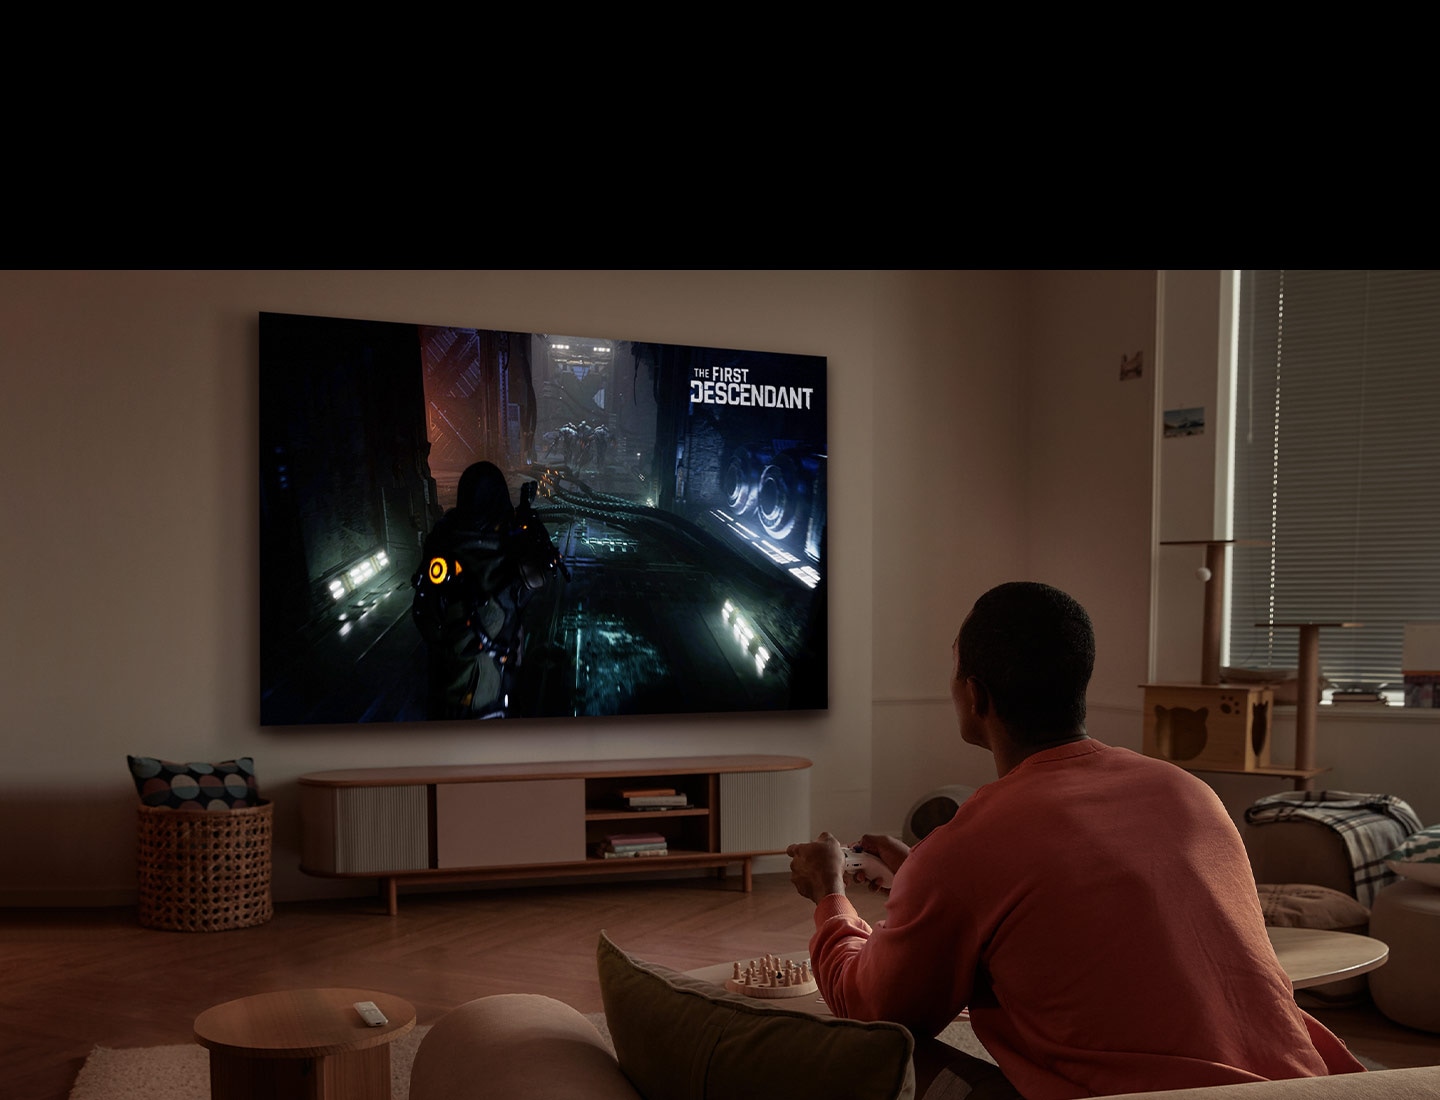 Ein Mann spielt ein Videospiel auf einem großen Fernsehbildschirm im Wohnzimmer mit einem drahtlosen Controller. Das Logo des Spiels 'First Descendant' befindet sich oben auf dem Bildschirm.